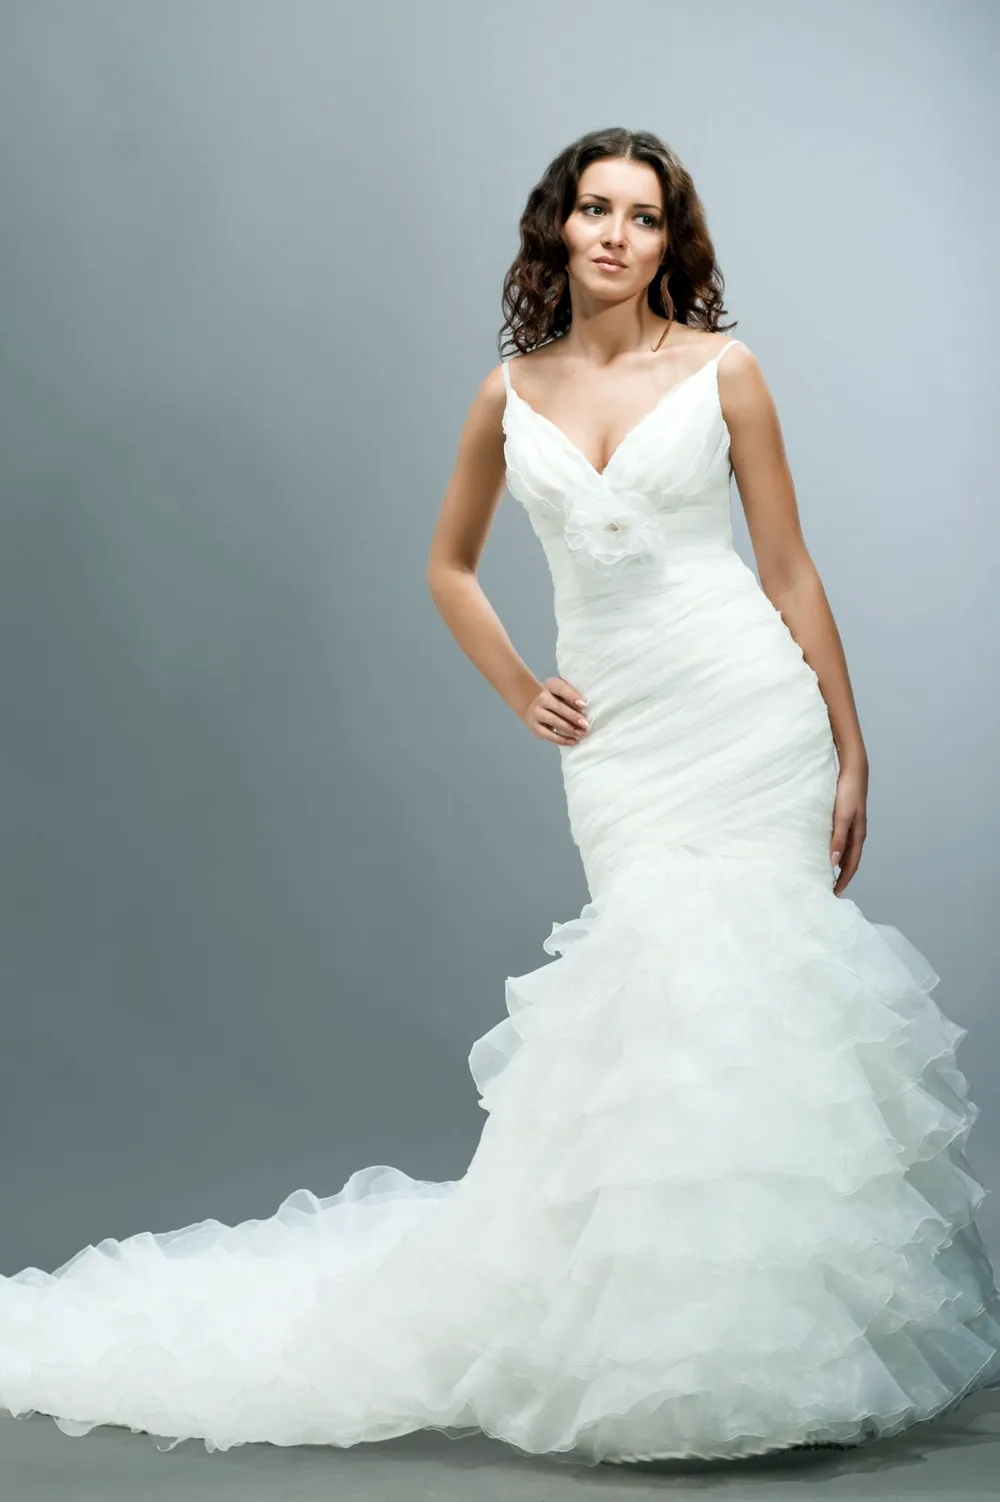 Модель в свадебном платье съемка